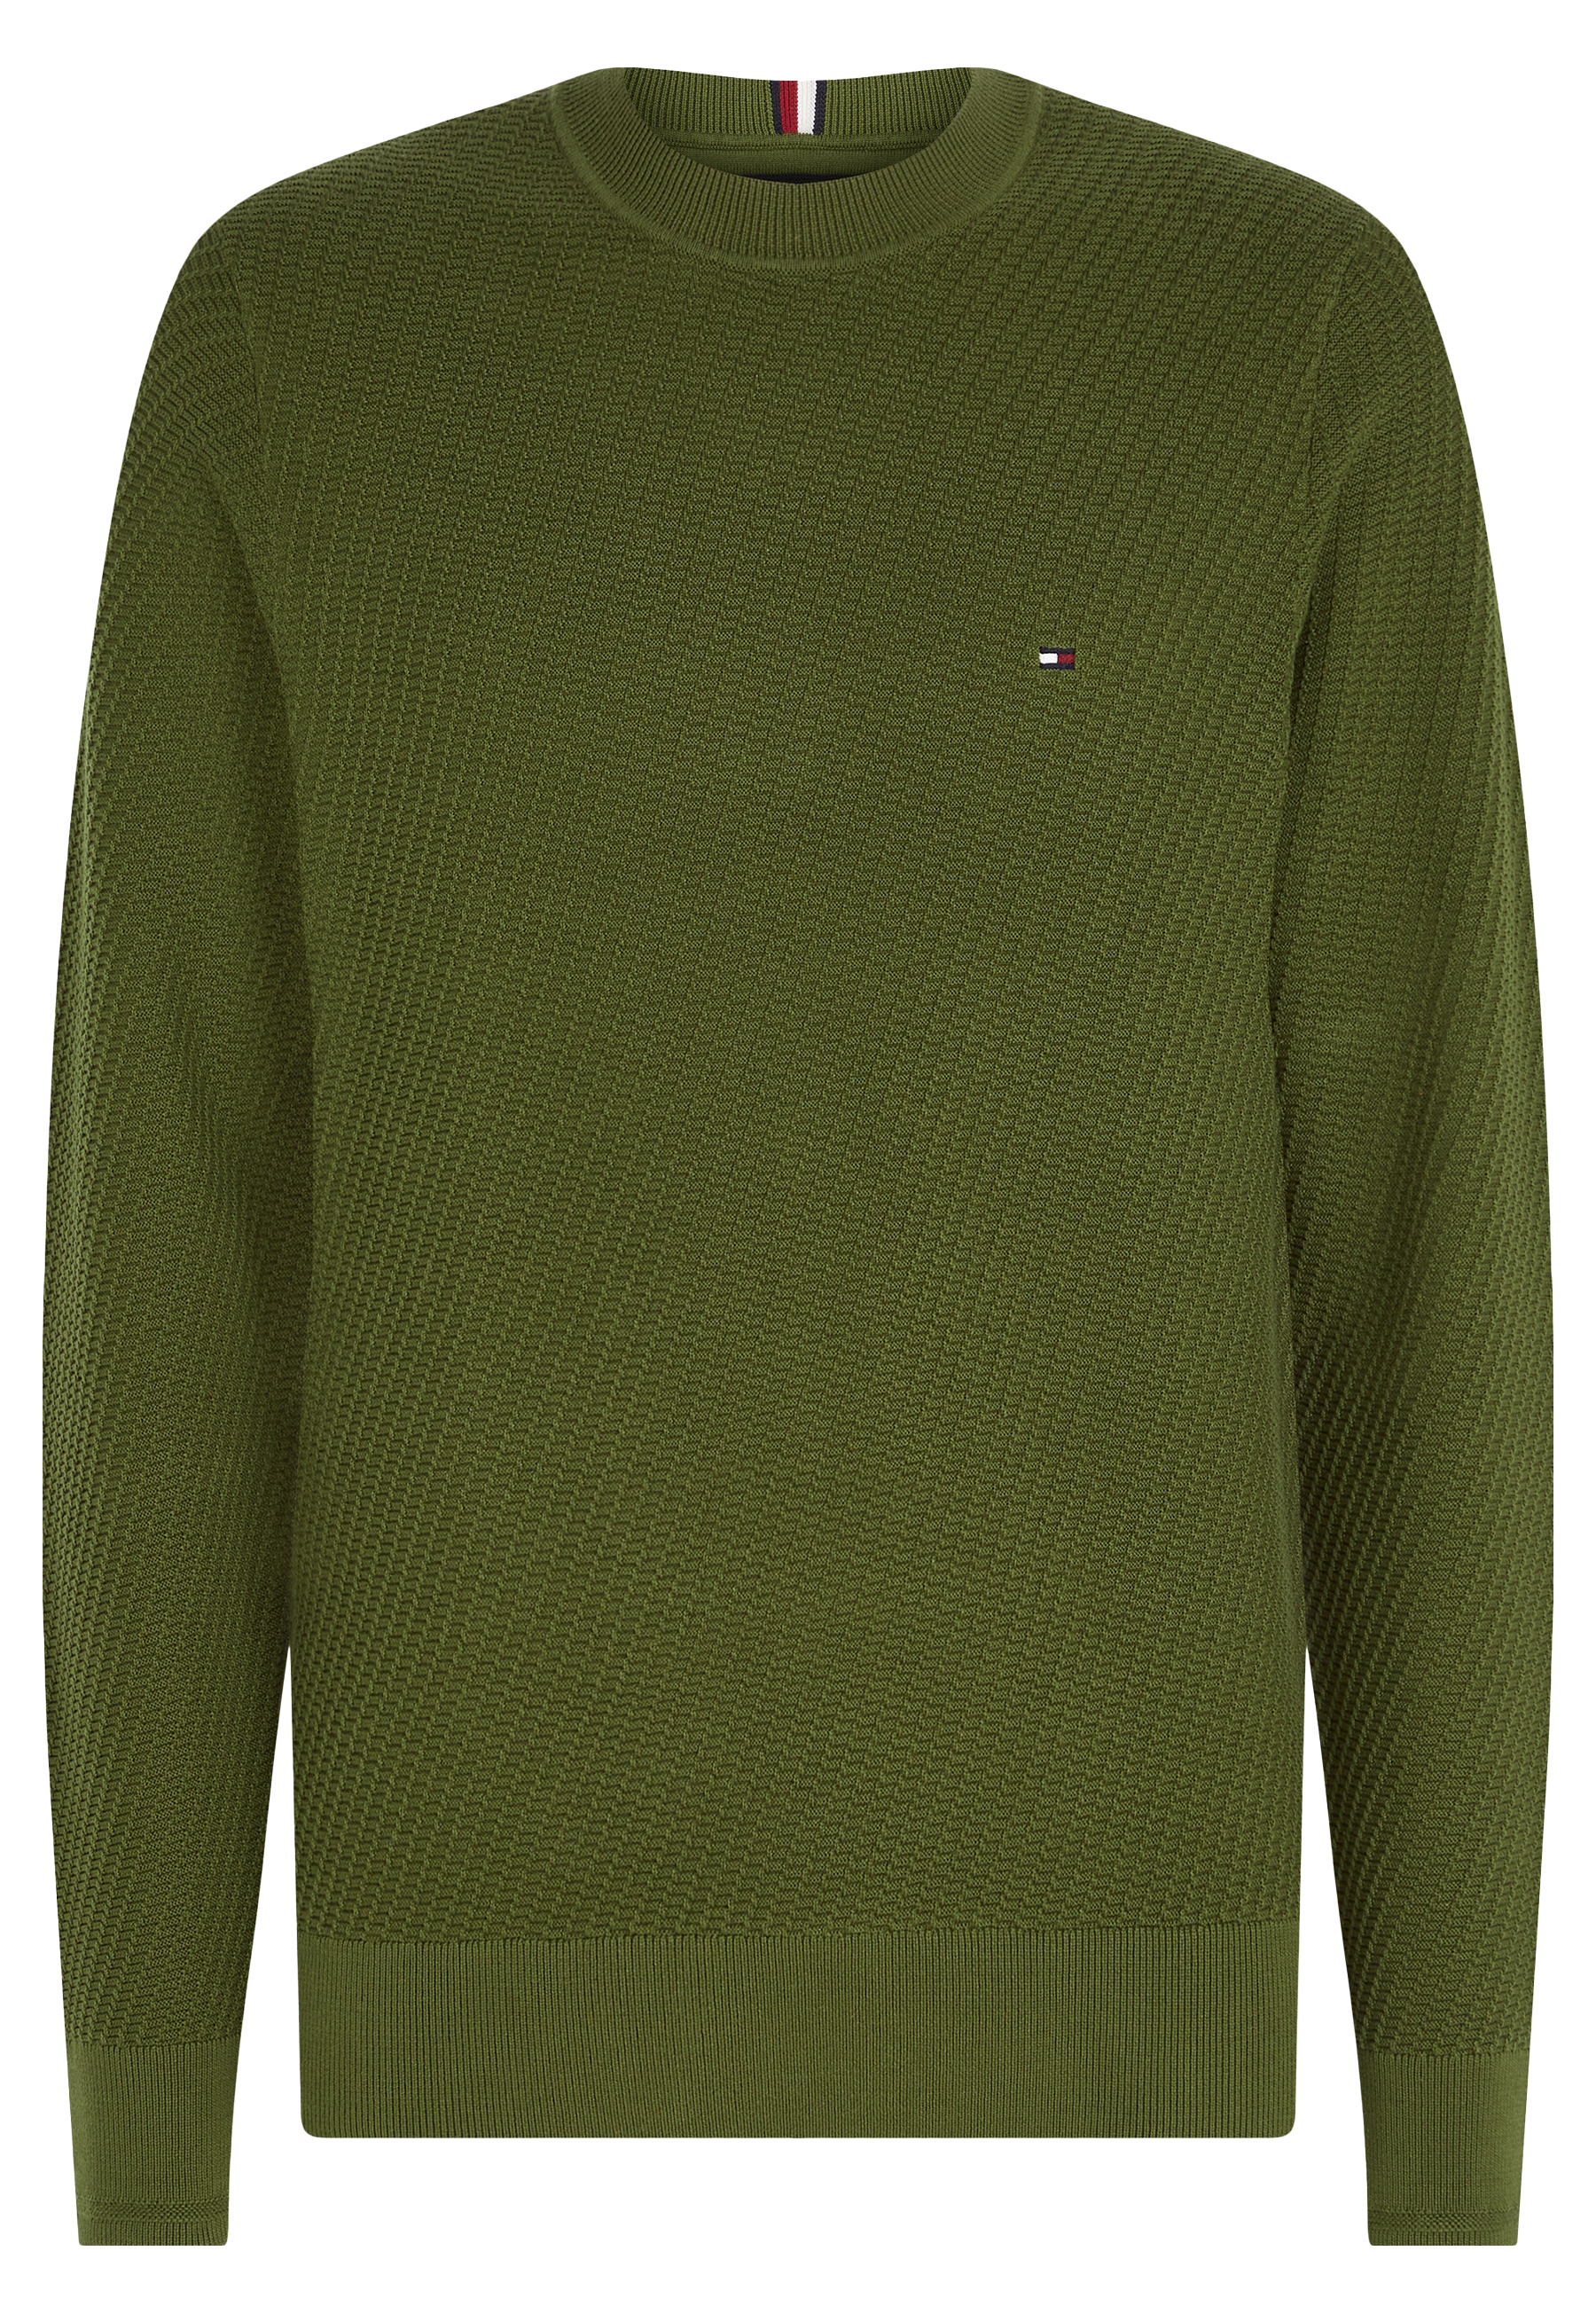 Tommy Hilfiger truien groen Heren maat XL